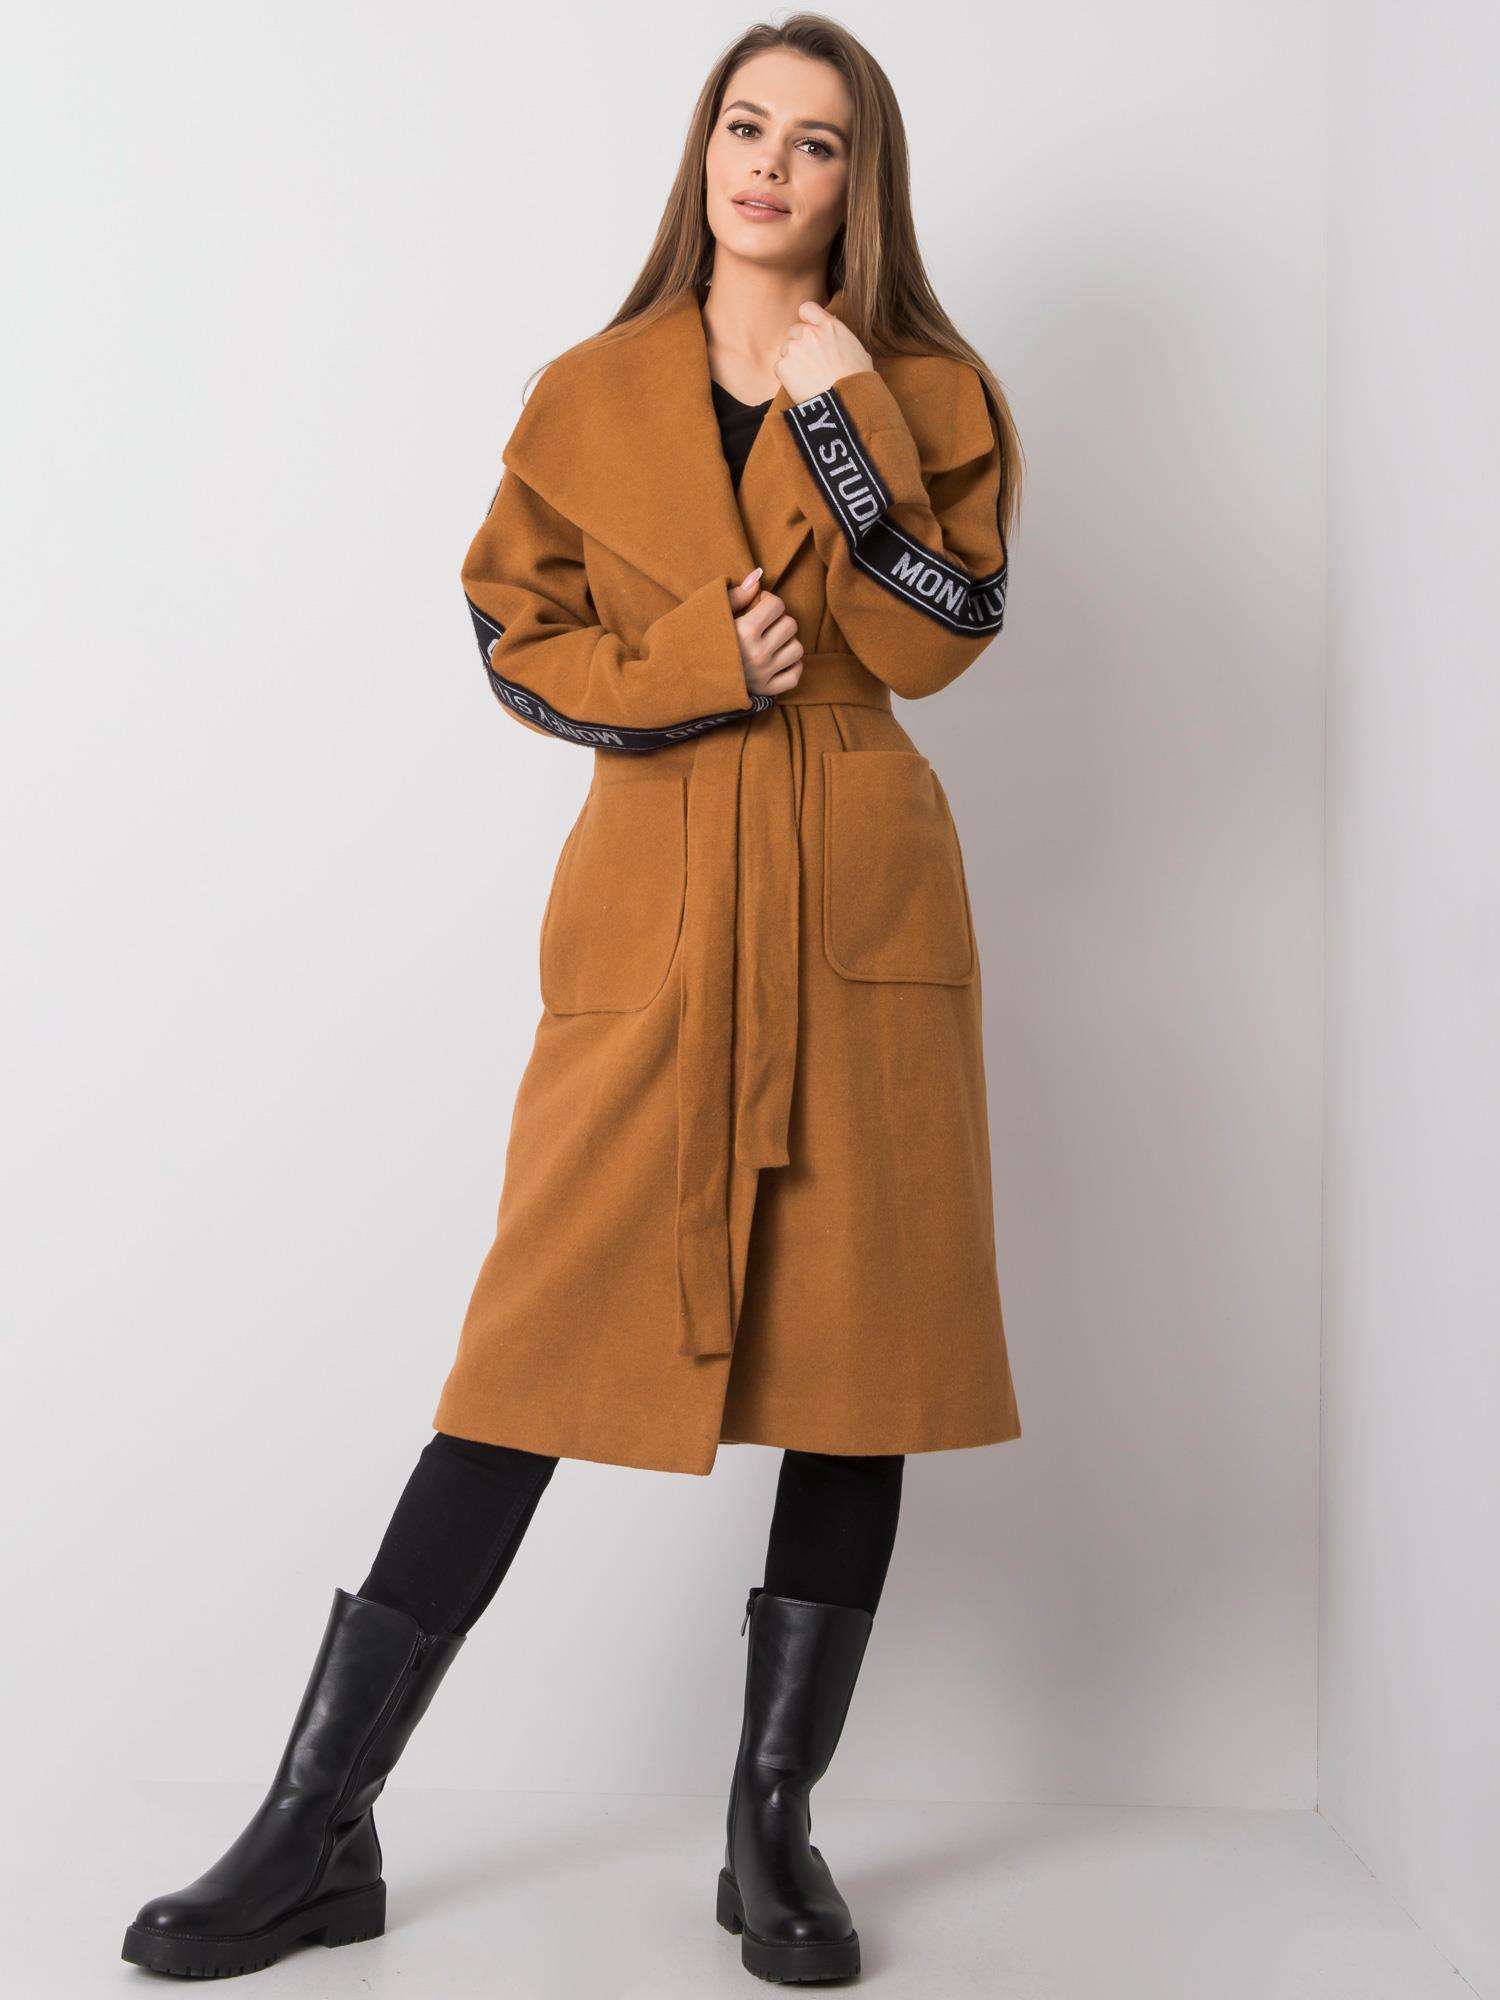 Hnědý dámský kabát s pruhem na rukávu -LK-PL-508316.95P-brown Velikost: 38